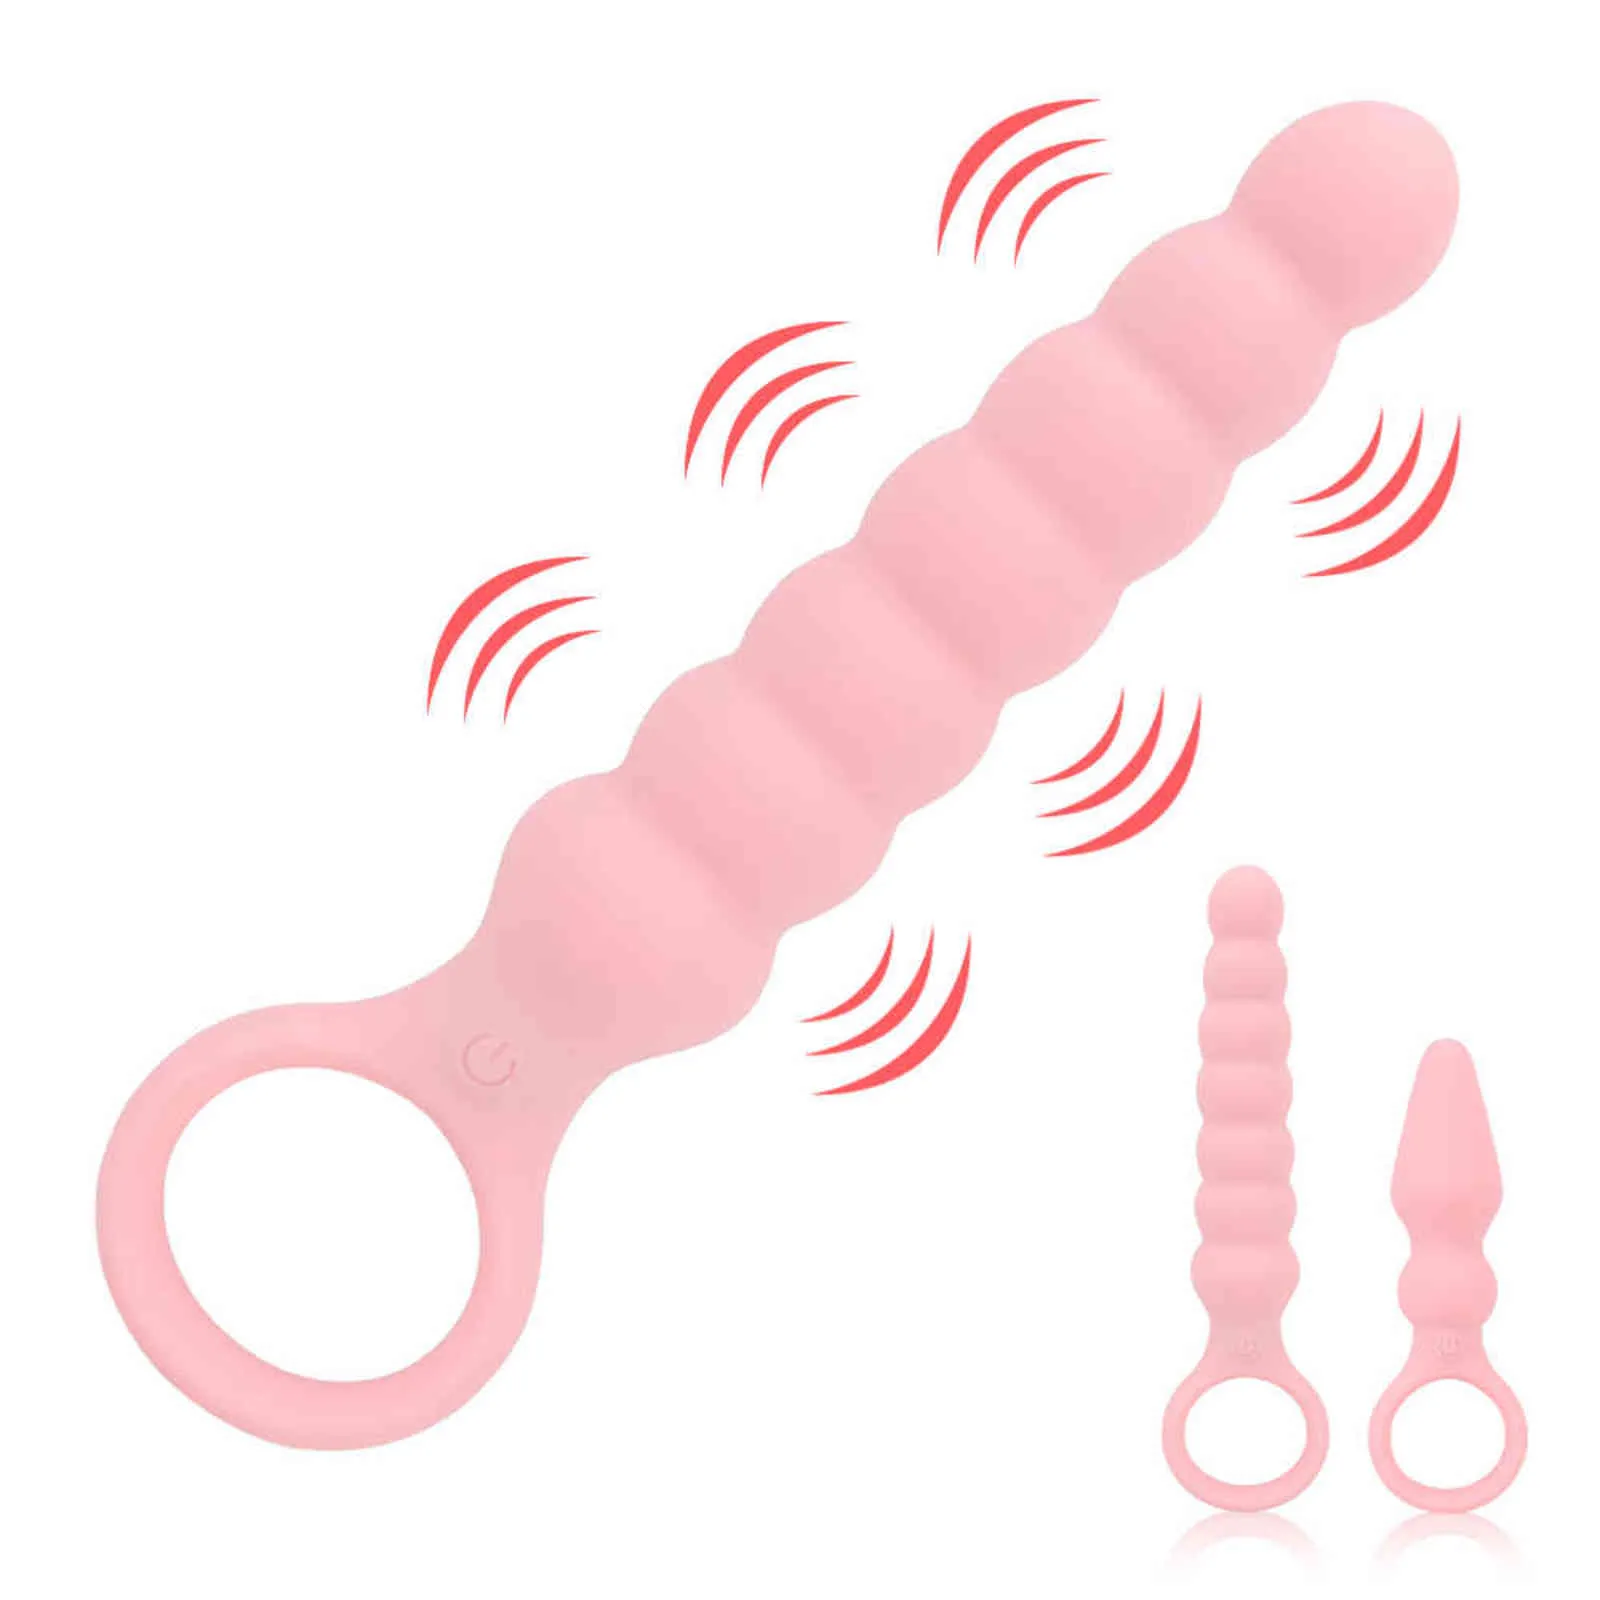 NXY肛門玩具S / L 10周波数プルリングビーズバイブレーター前立腺刺激装置バットプラグセックスグッズ男性の男性マッサージャー